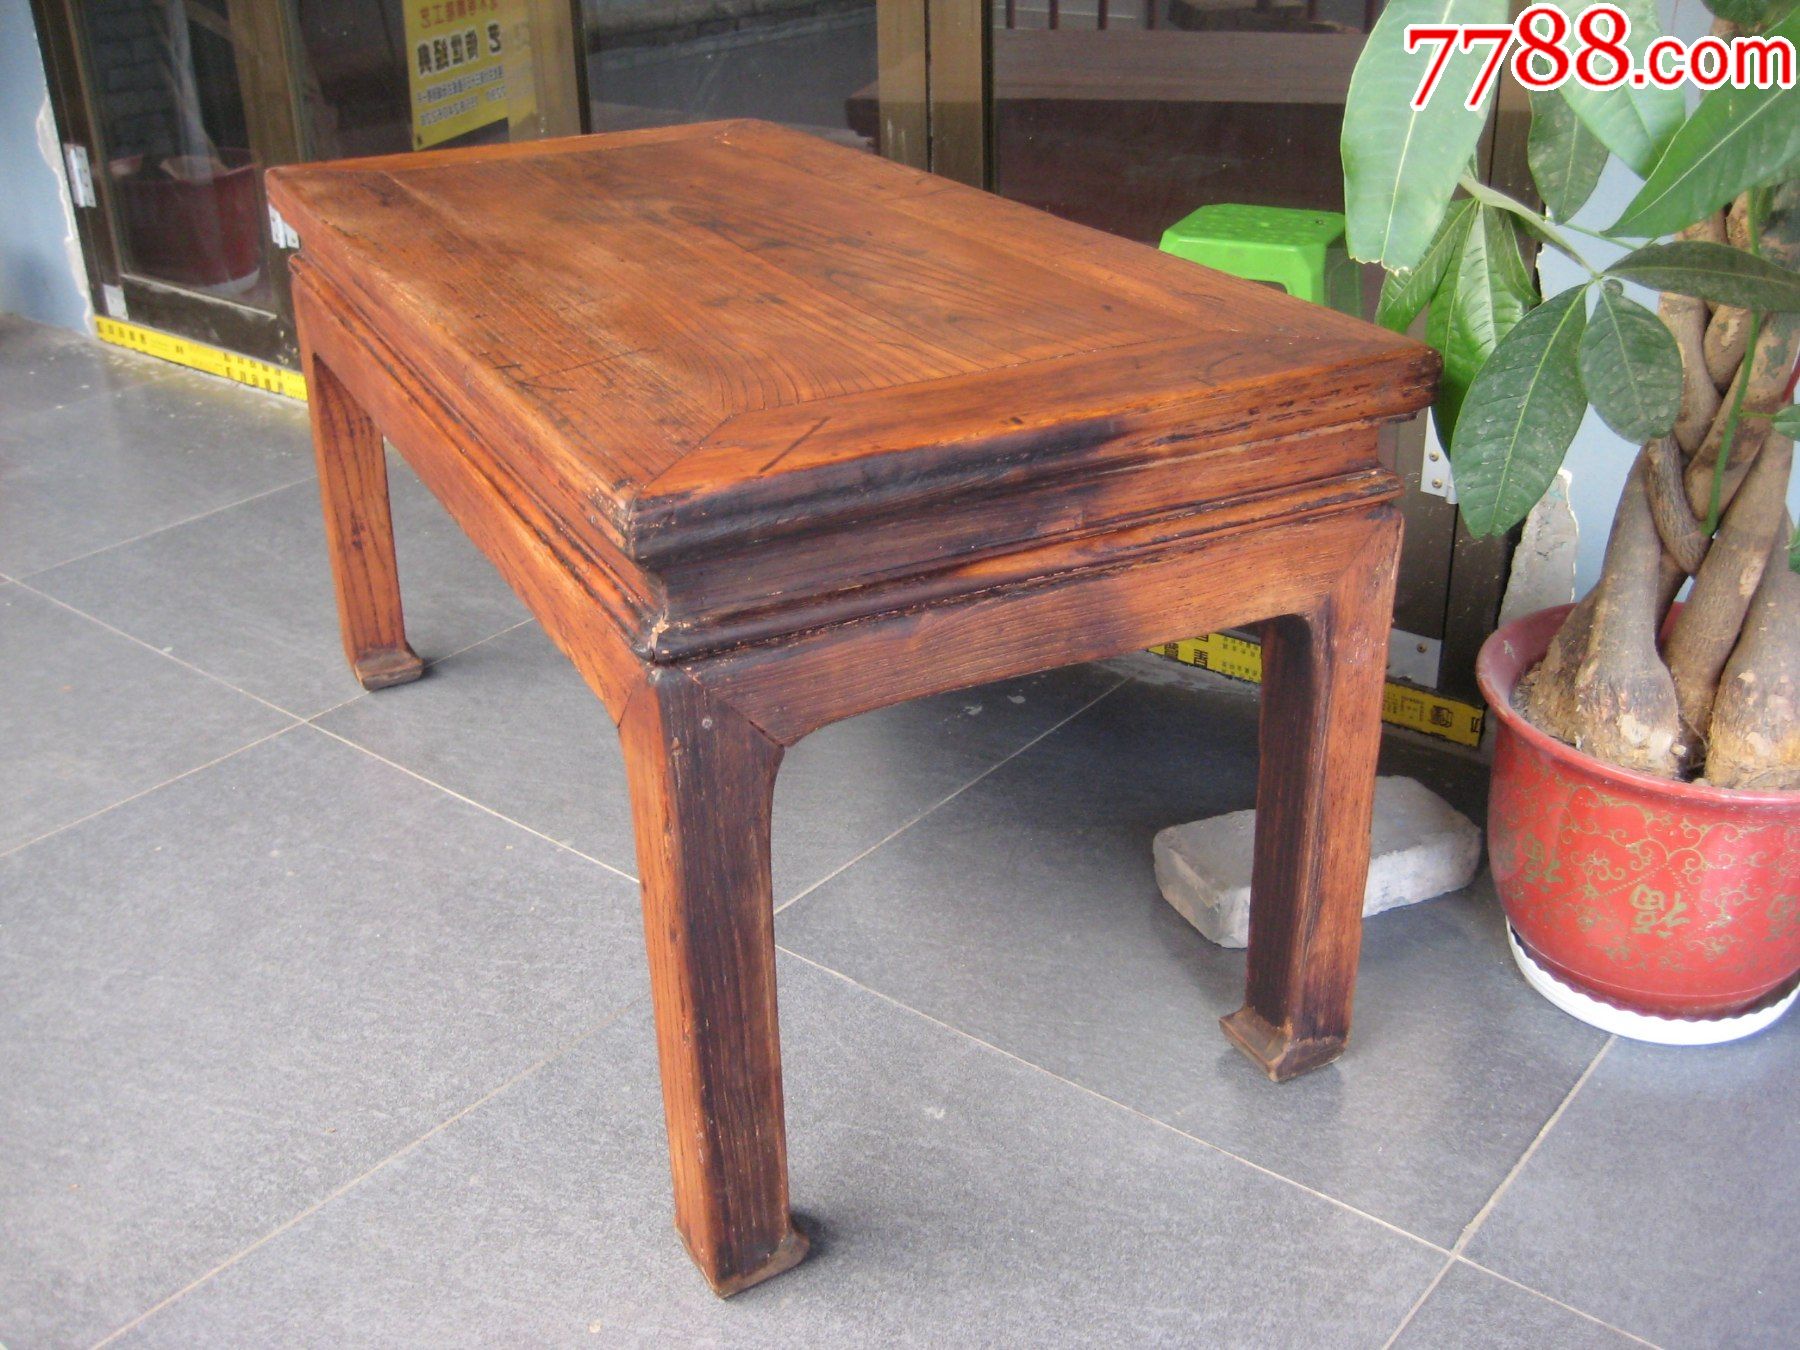 老家具榆木桌子古玩木器怀旧明清老家具收藏摆设民俗博物馆老物件